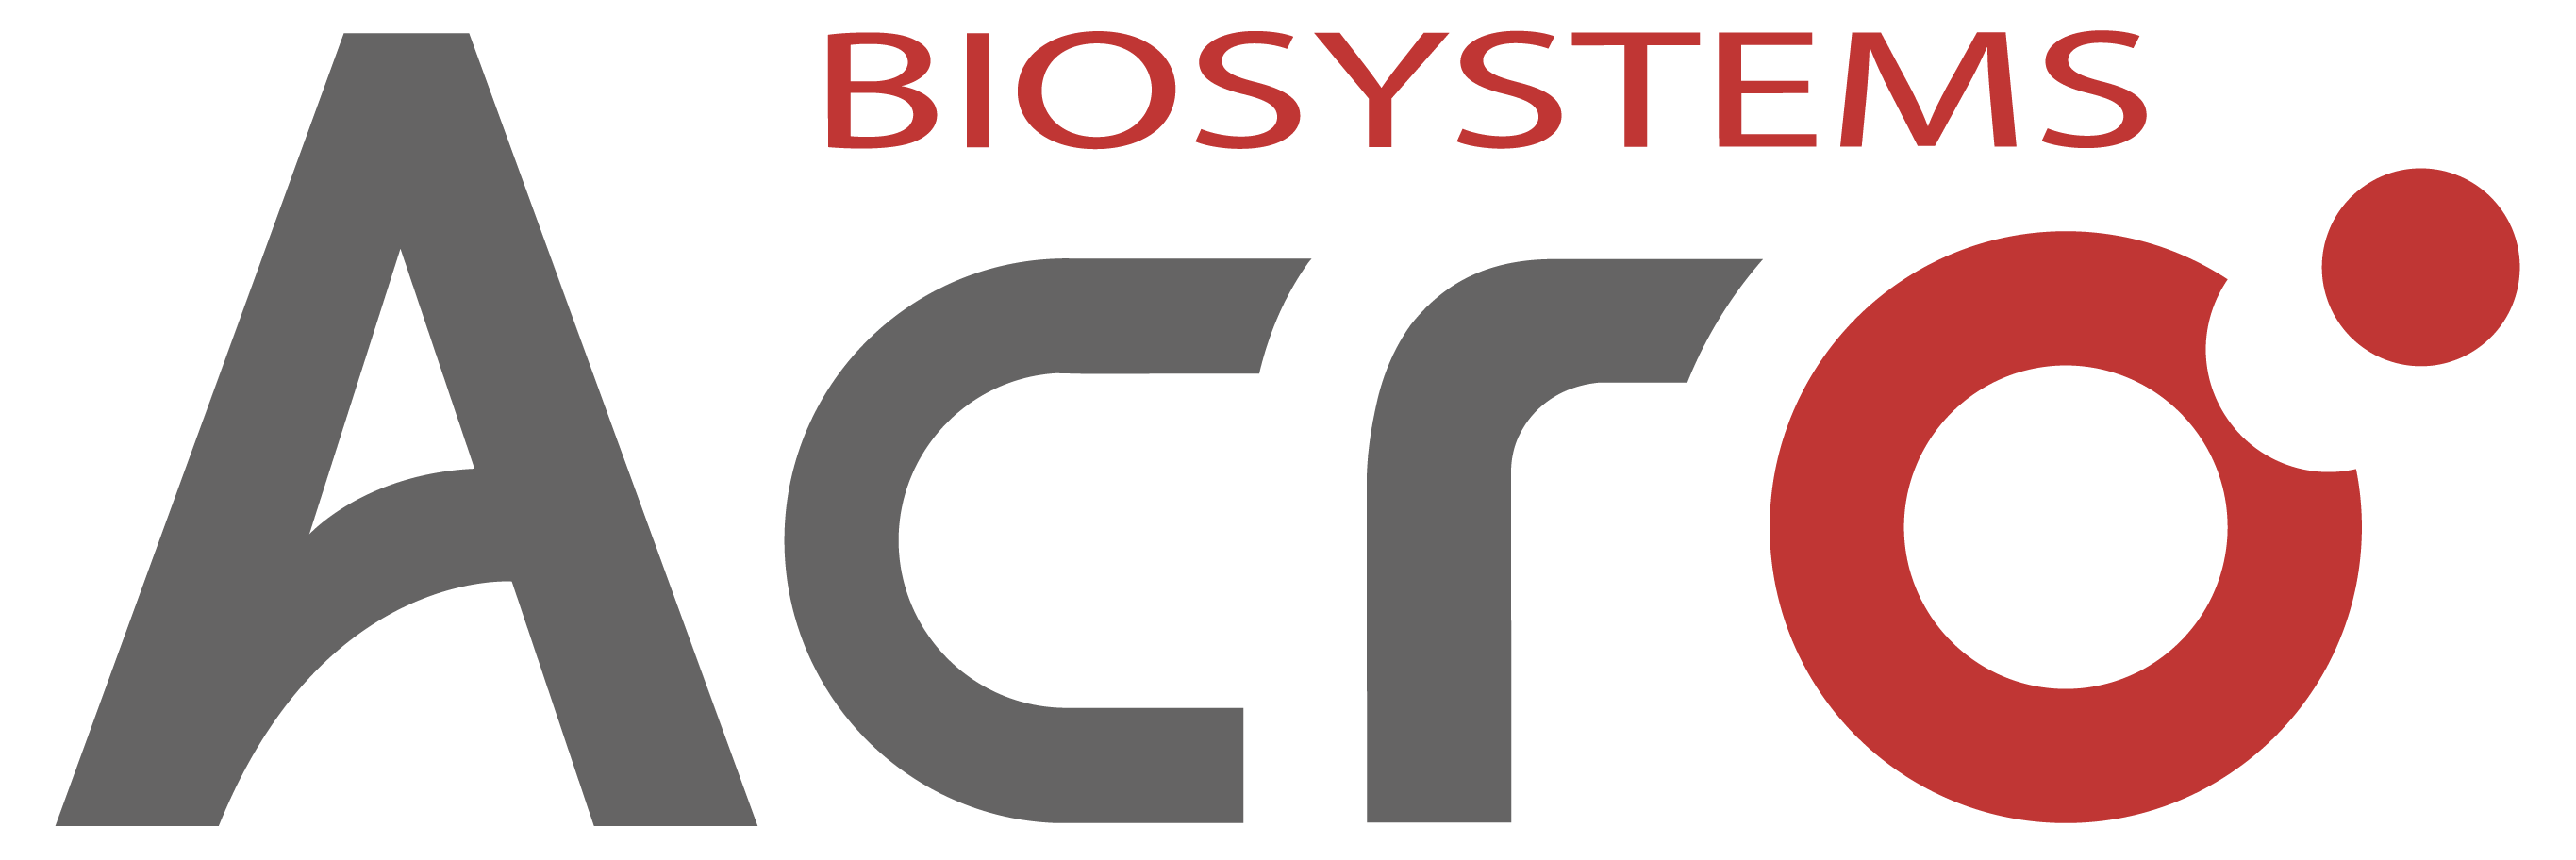 ACRO Biosystems